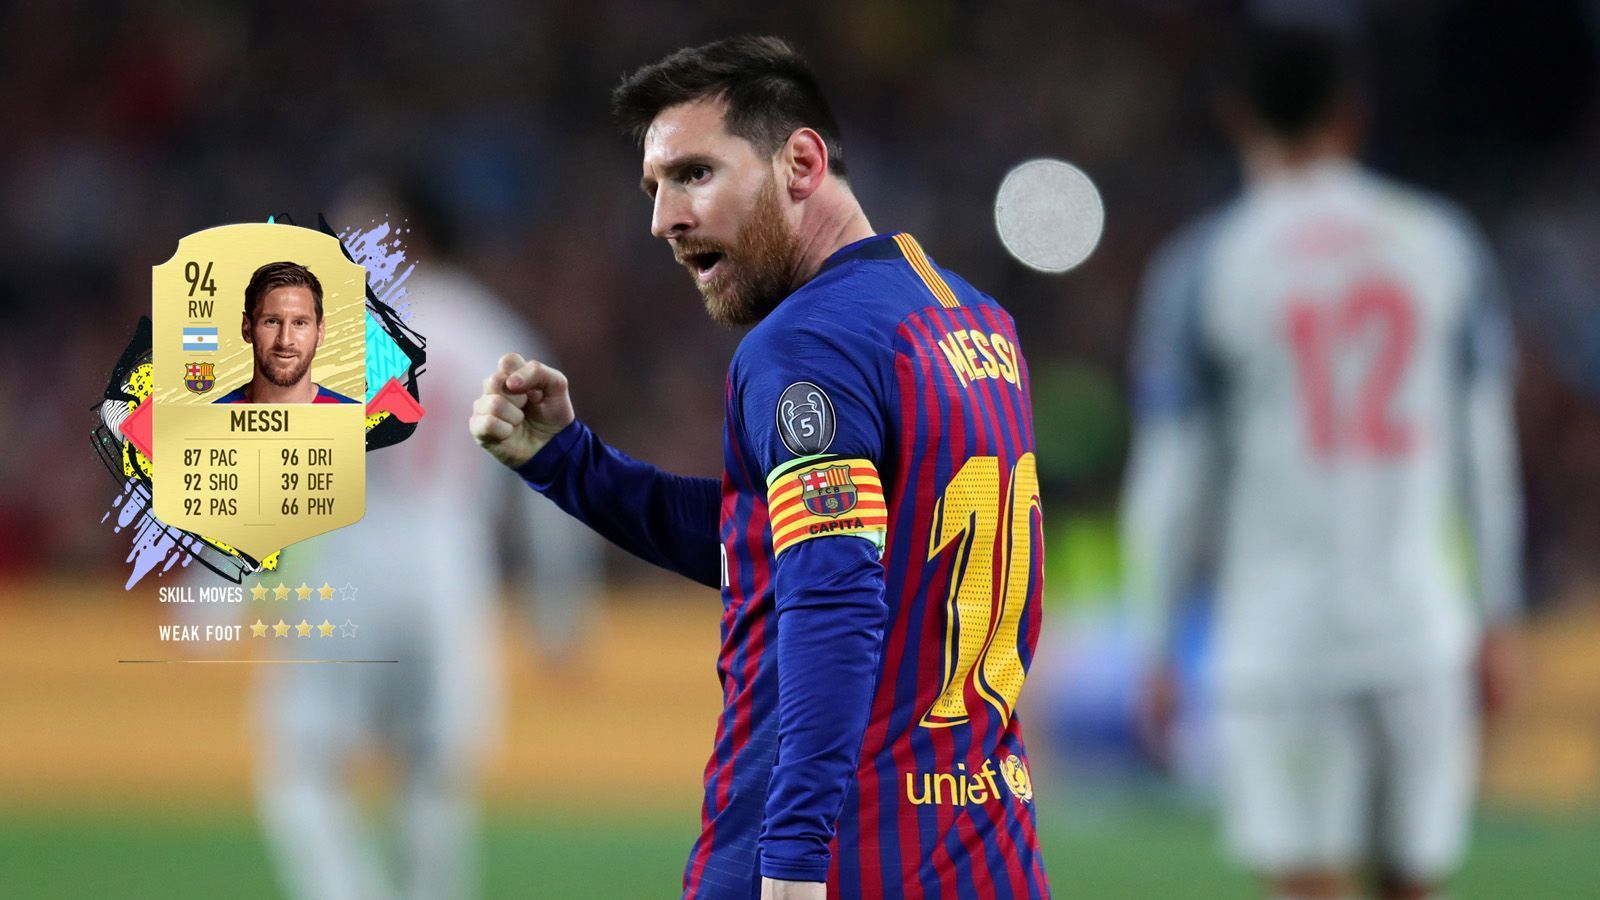 
                <strong>1. Lionel Messi (FC Barcelona) </strong><br>
                Gesamtstärke: 94Alter: 32Position: Angriff
              